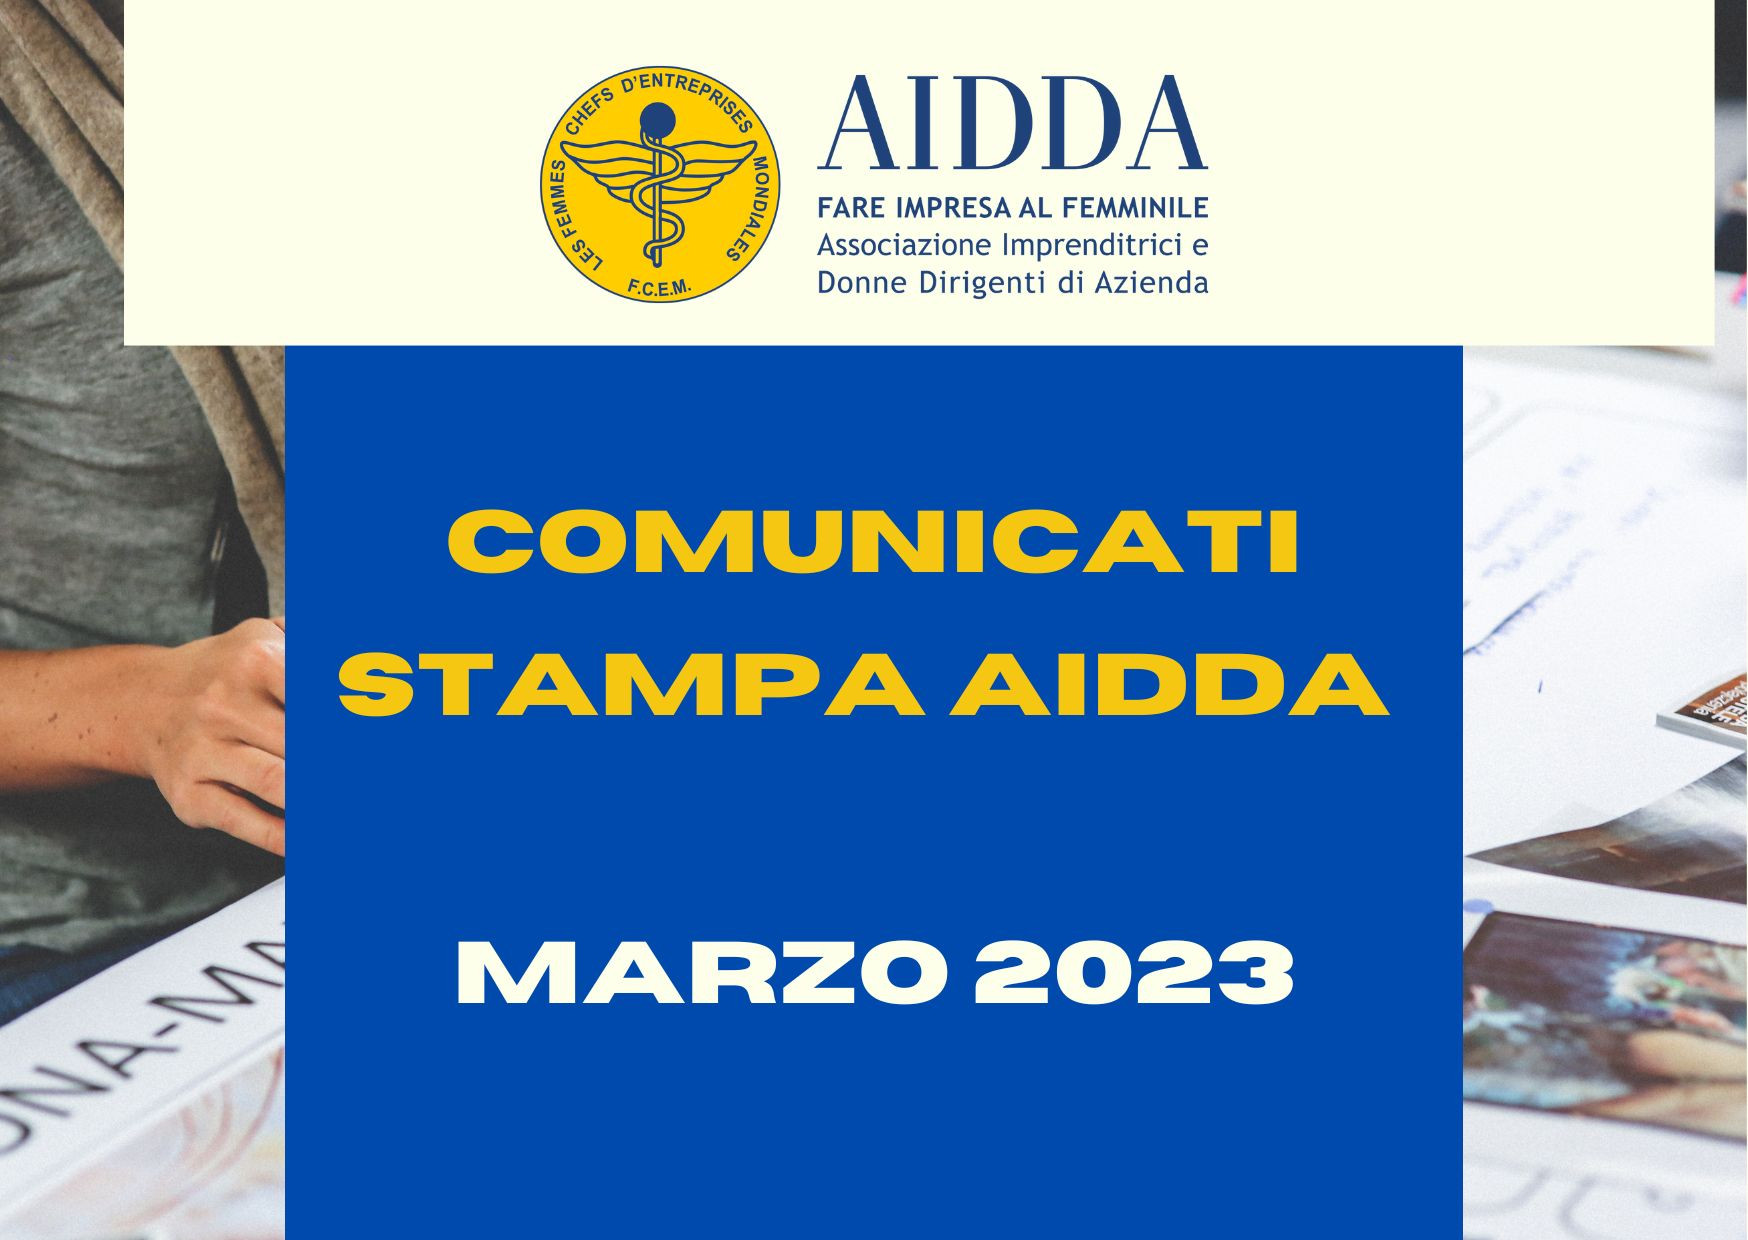 COMUNICATI STAMPA AIDDA marzo 2023.jpg